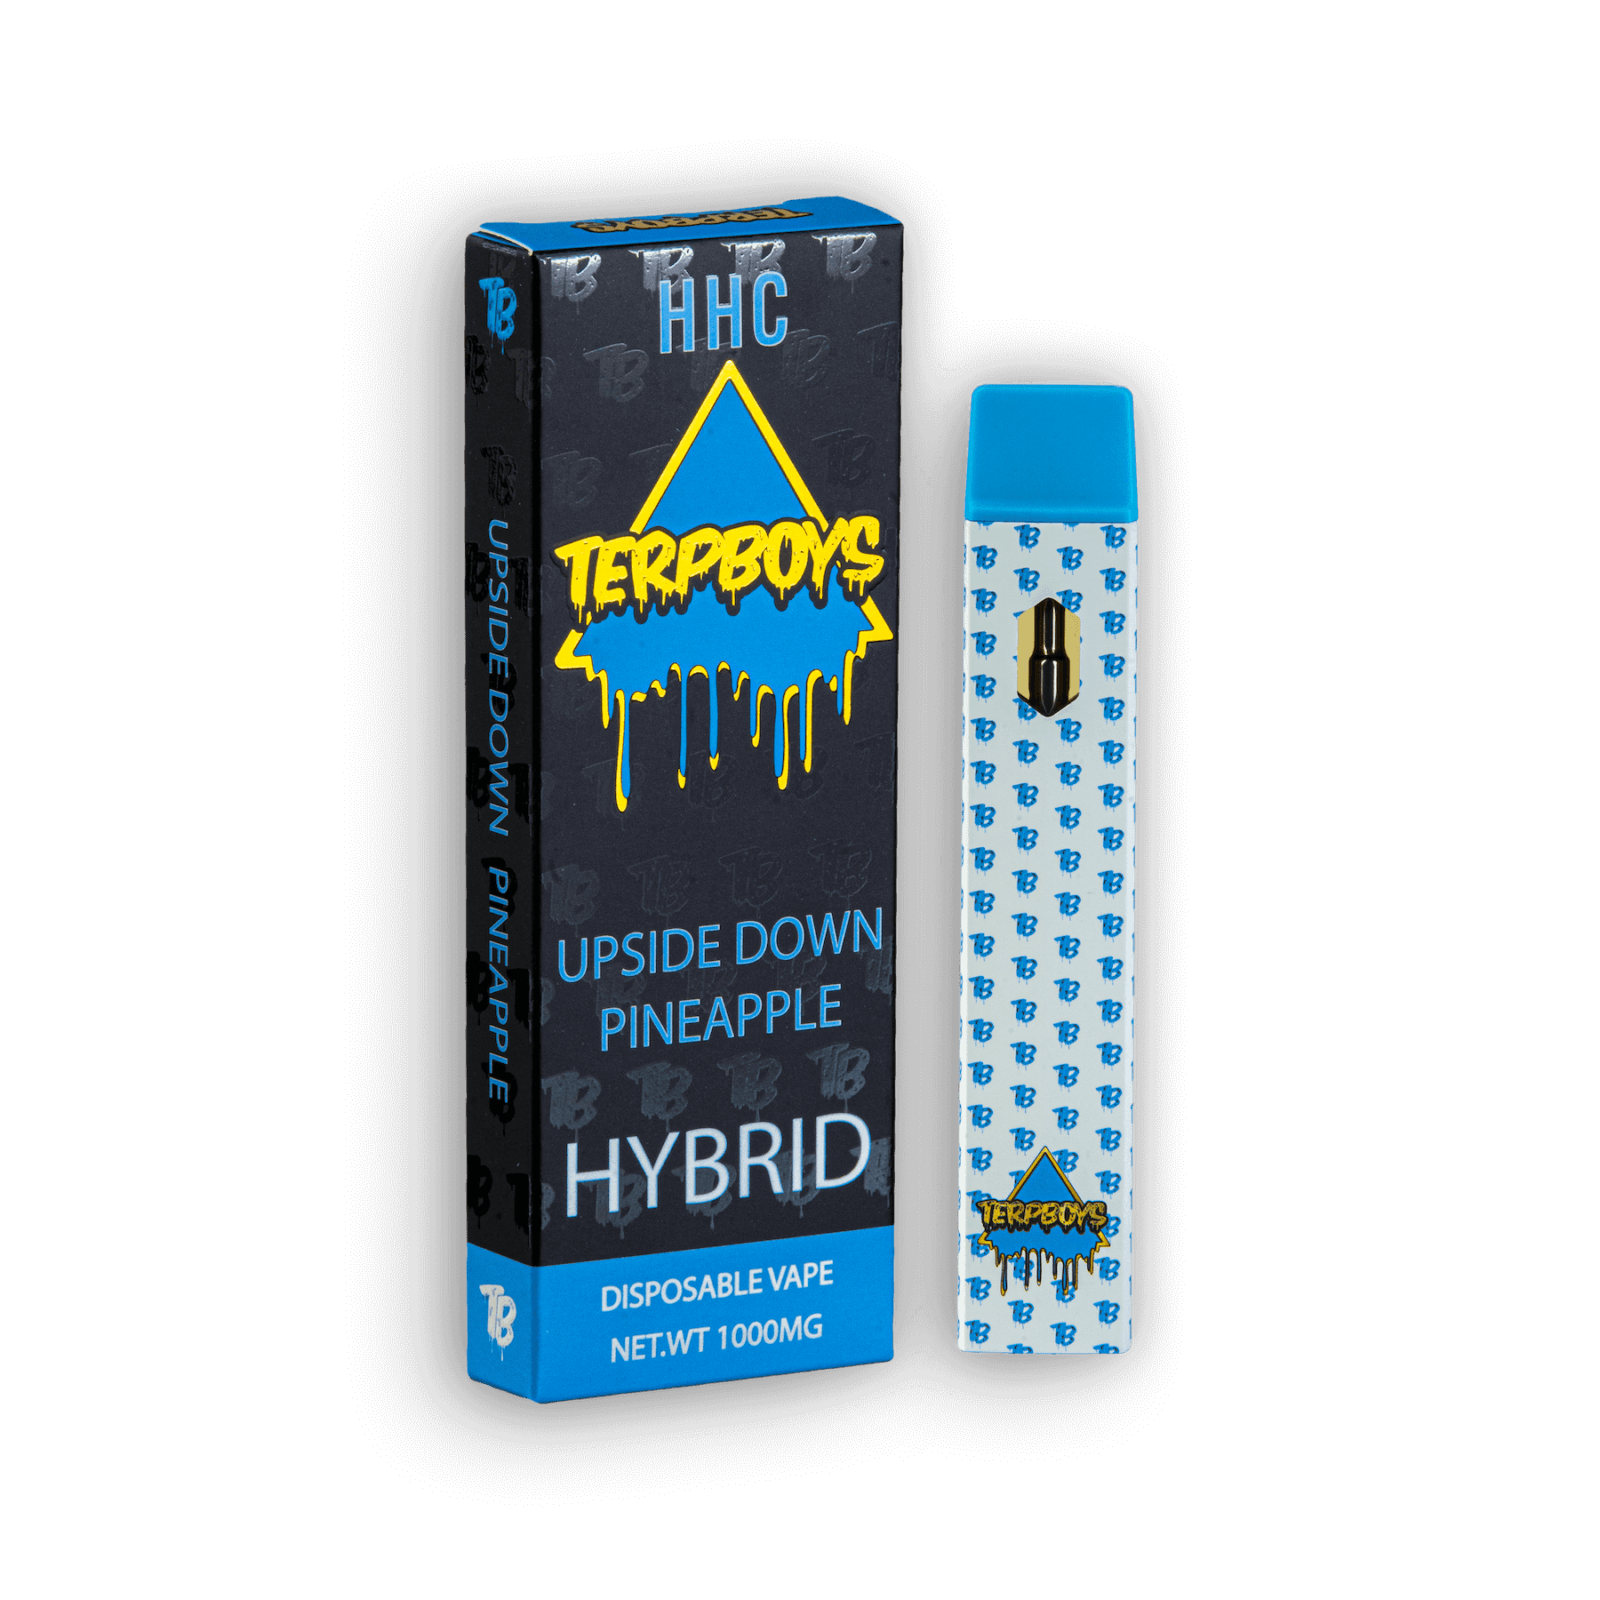 HHC Hybrid Disposable Vape